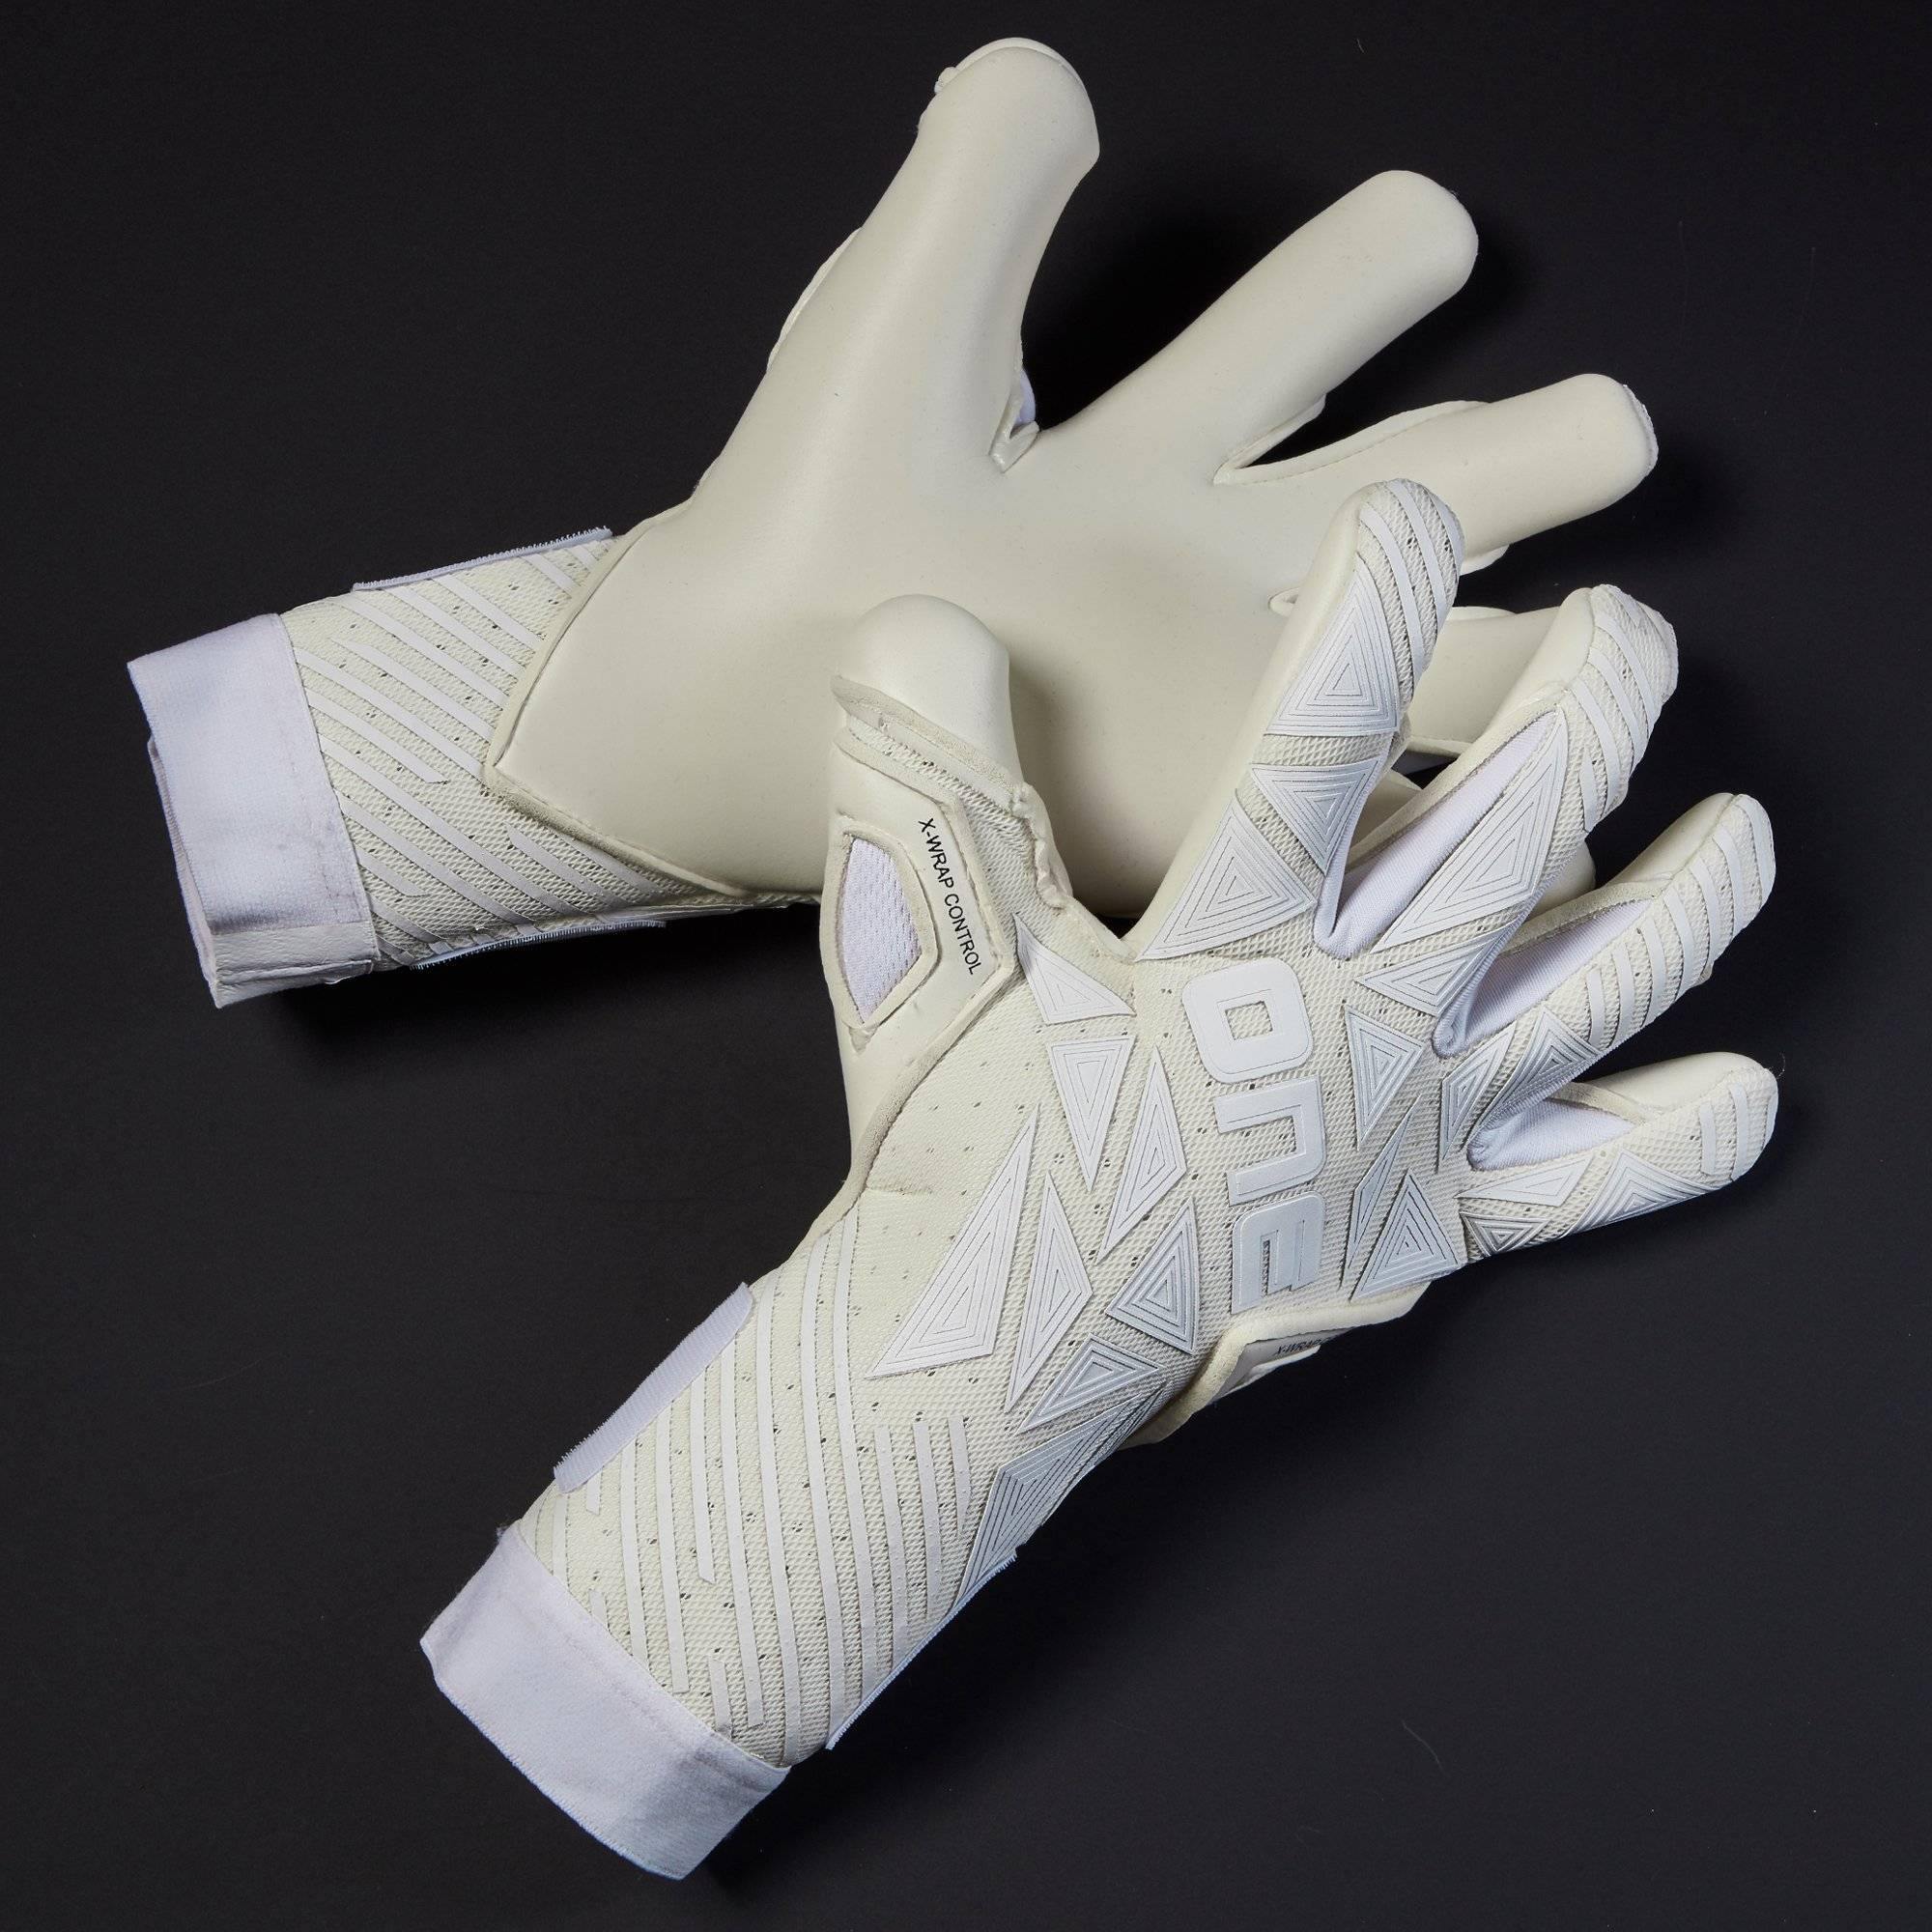 GEO 3.0 AM2 Goalkeeper Gloves, Strapless Goalie Gloves